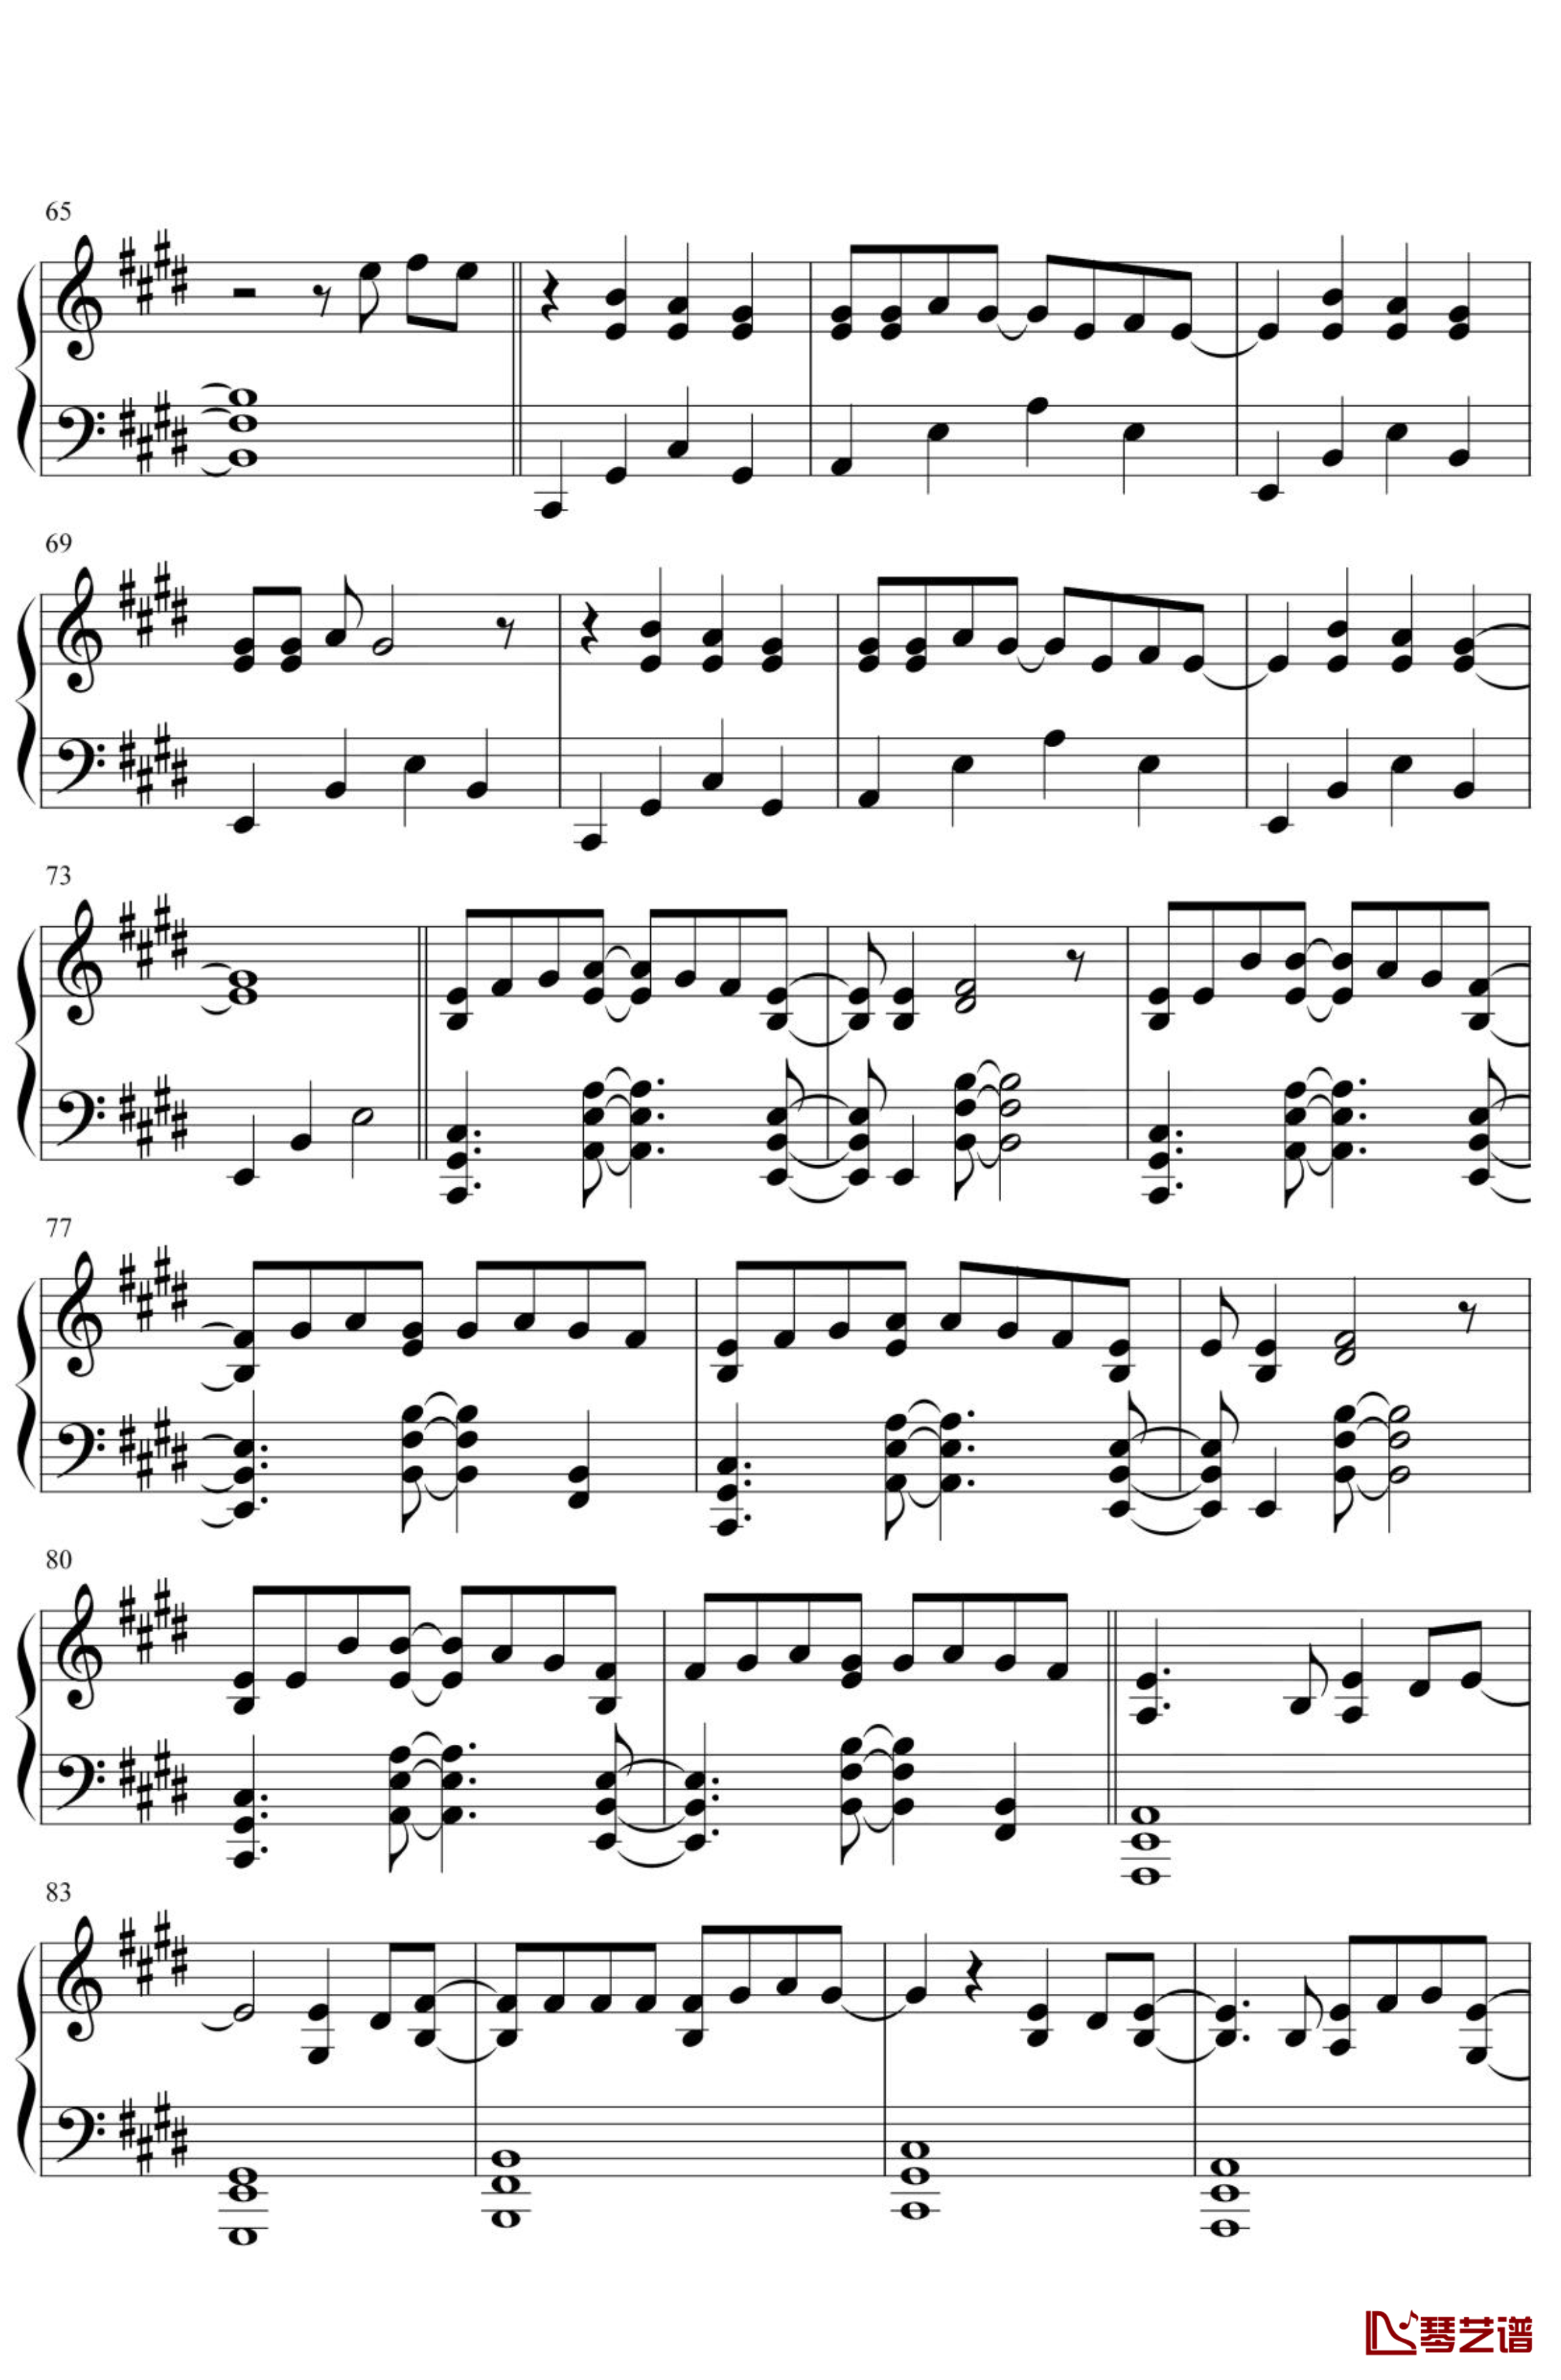 天气之子-グランドエスケープ钢琴谱 简化4